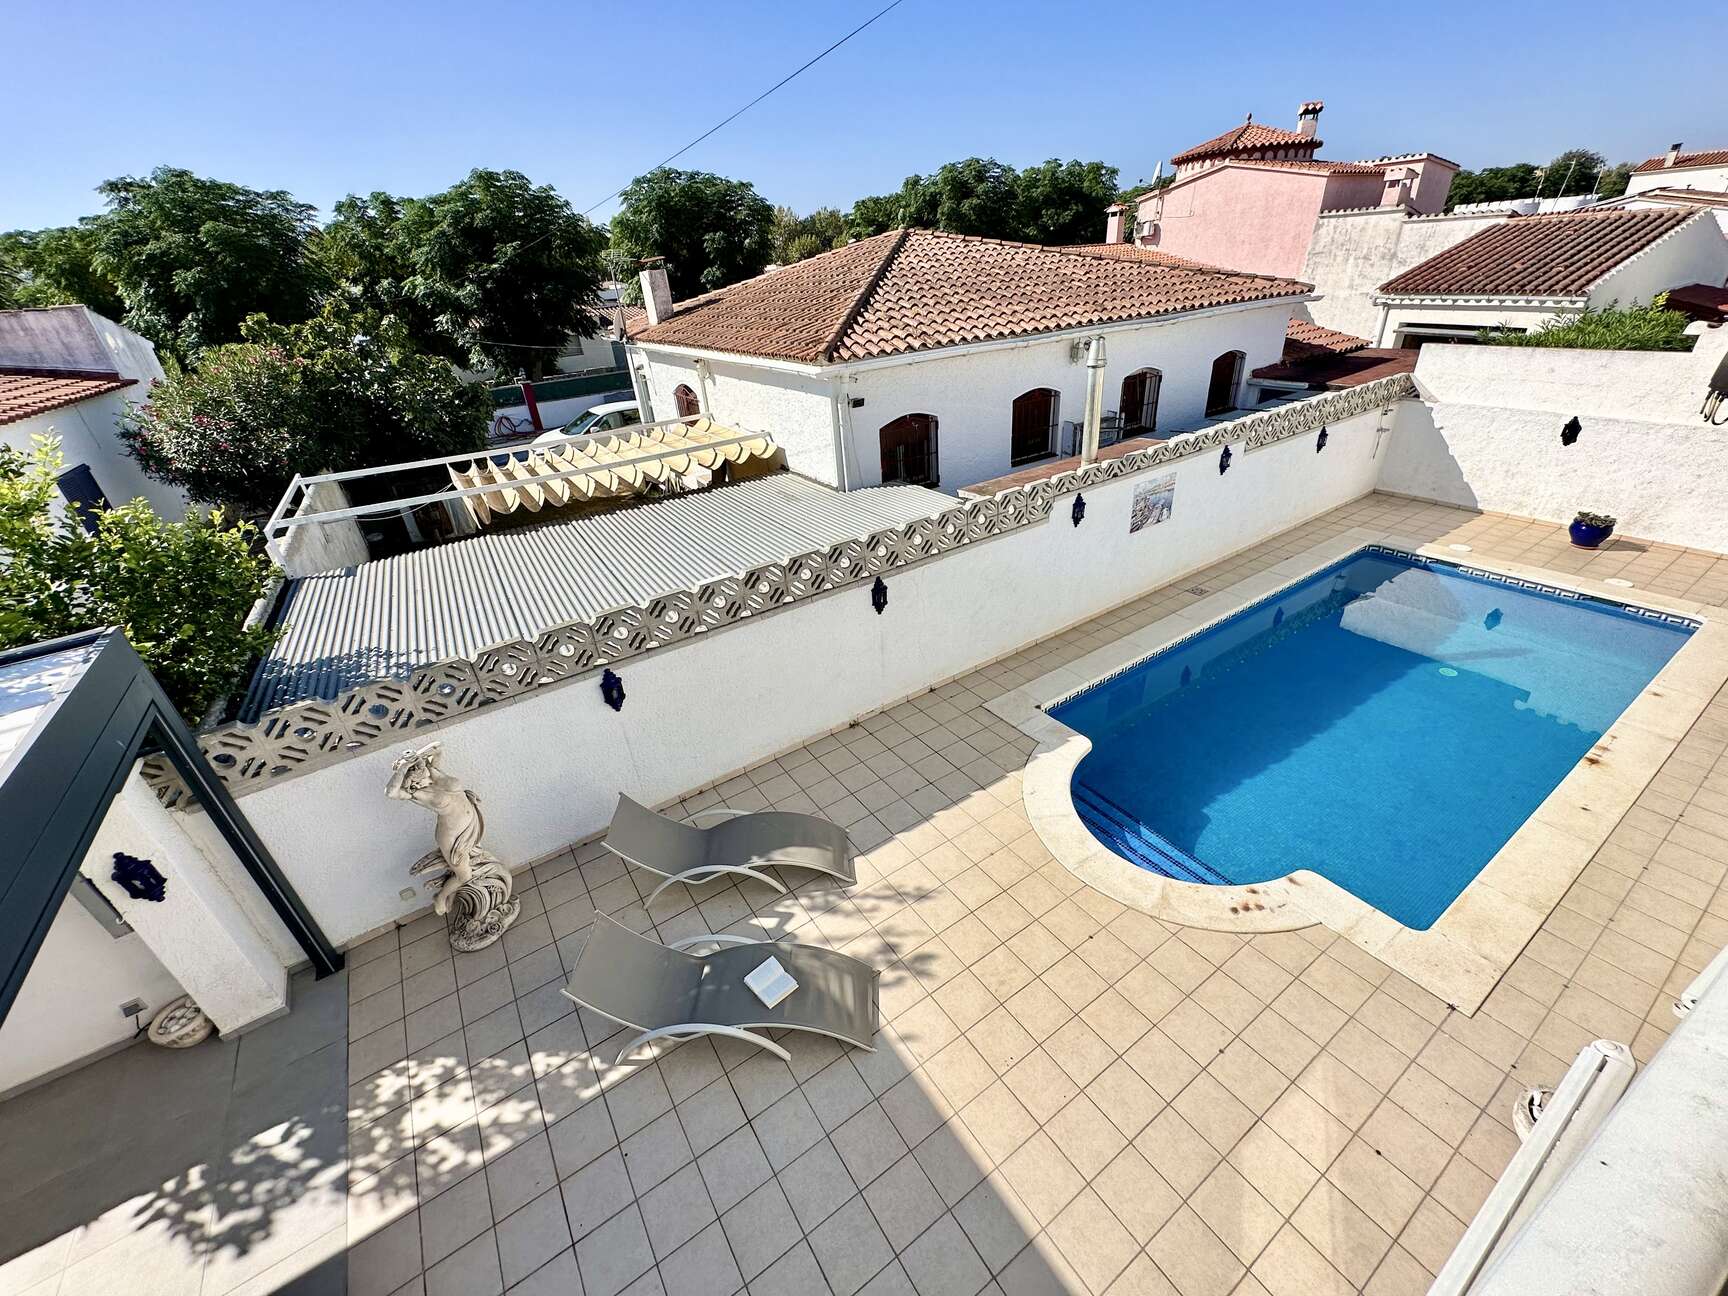 Schöne Villa mit Pool und Garage zum Verkauf in Empuriabrava